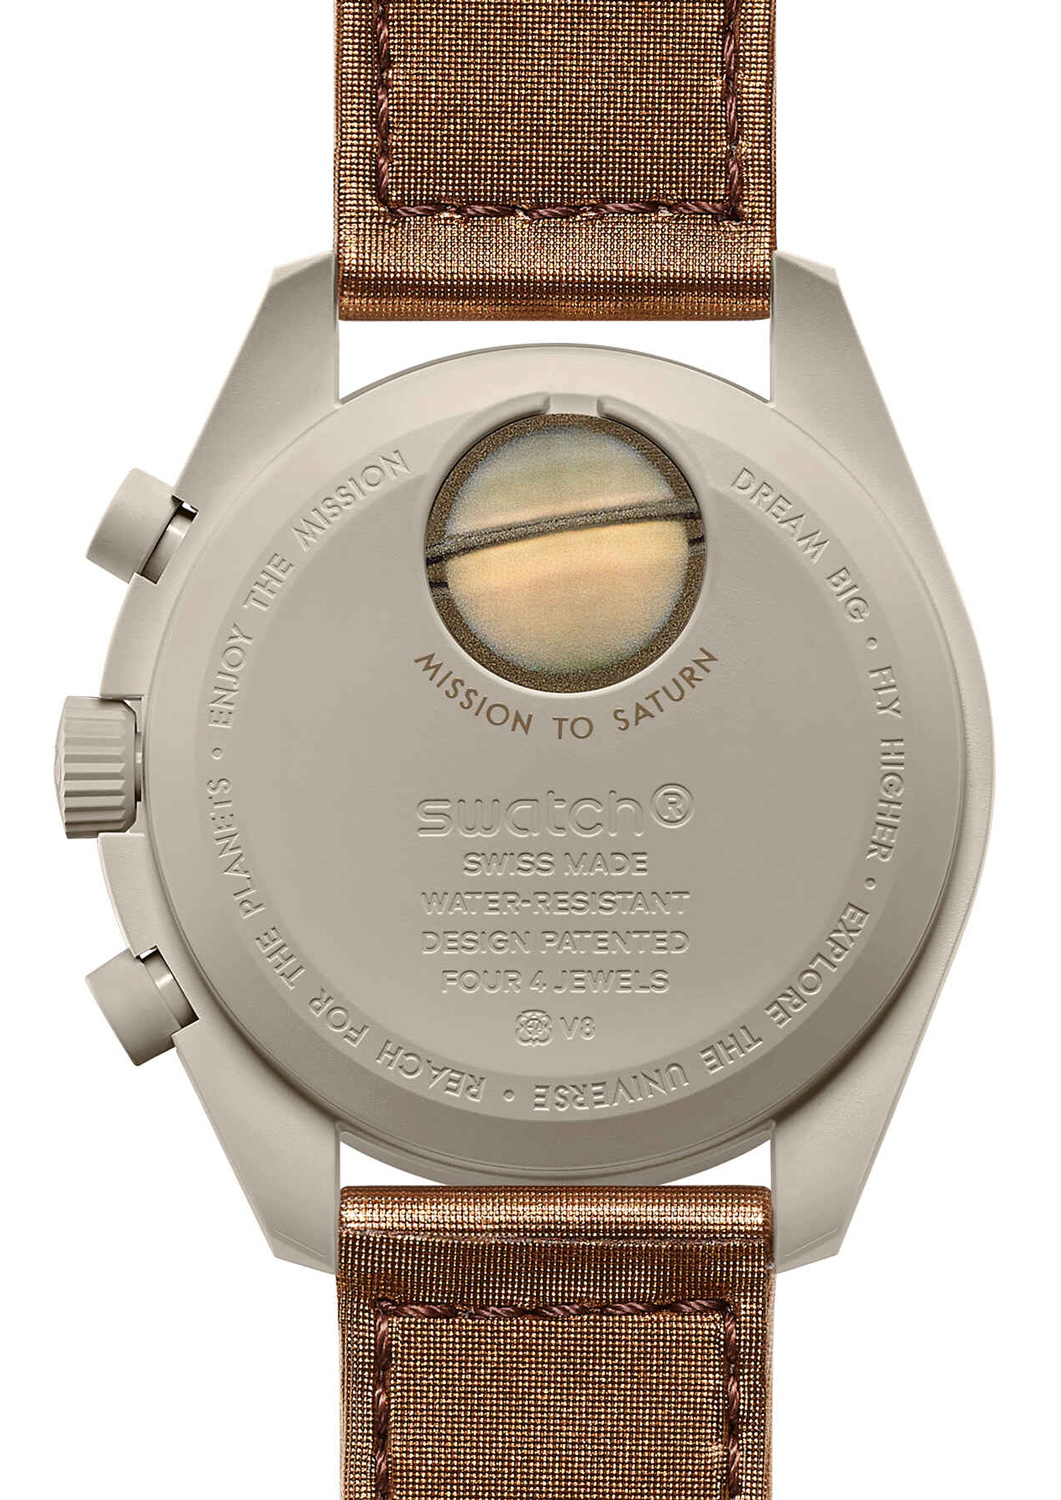 Omega x Swatch è la collaborazione più emozionate tra marchi di orologi di questo inizio anno. Arriva la MoonSwatch Collection.